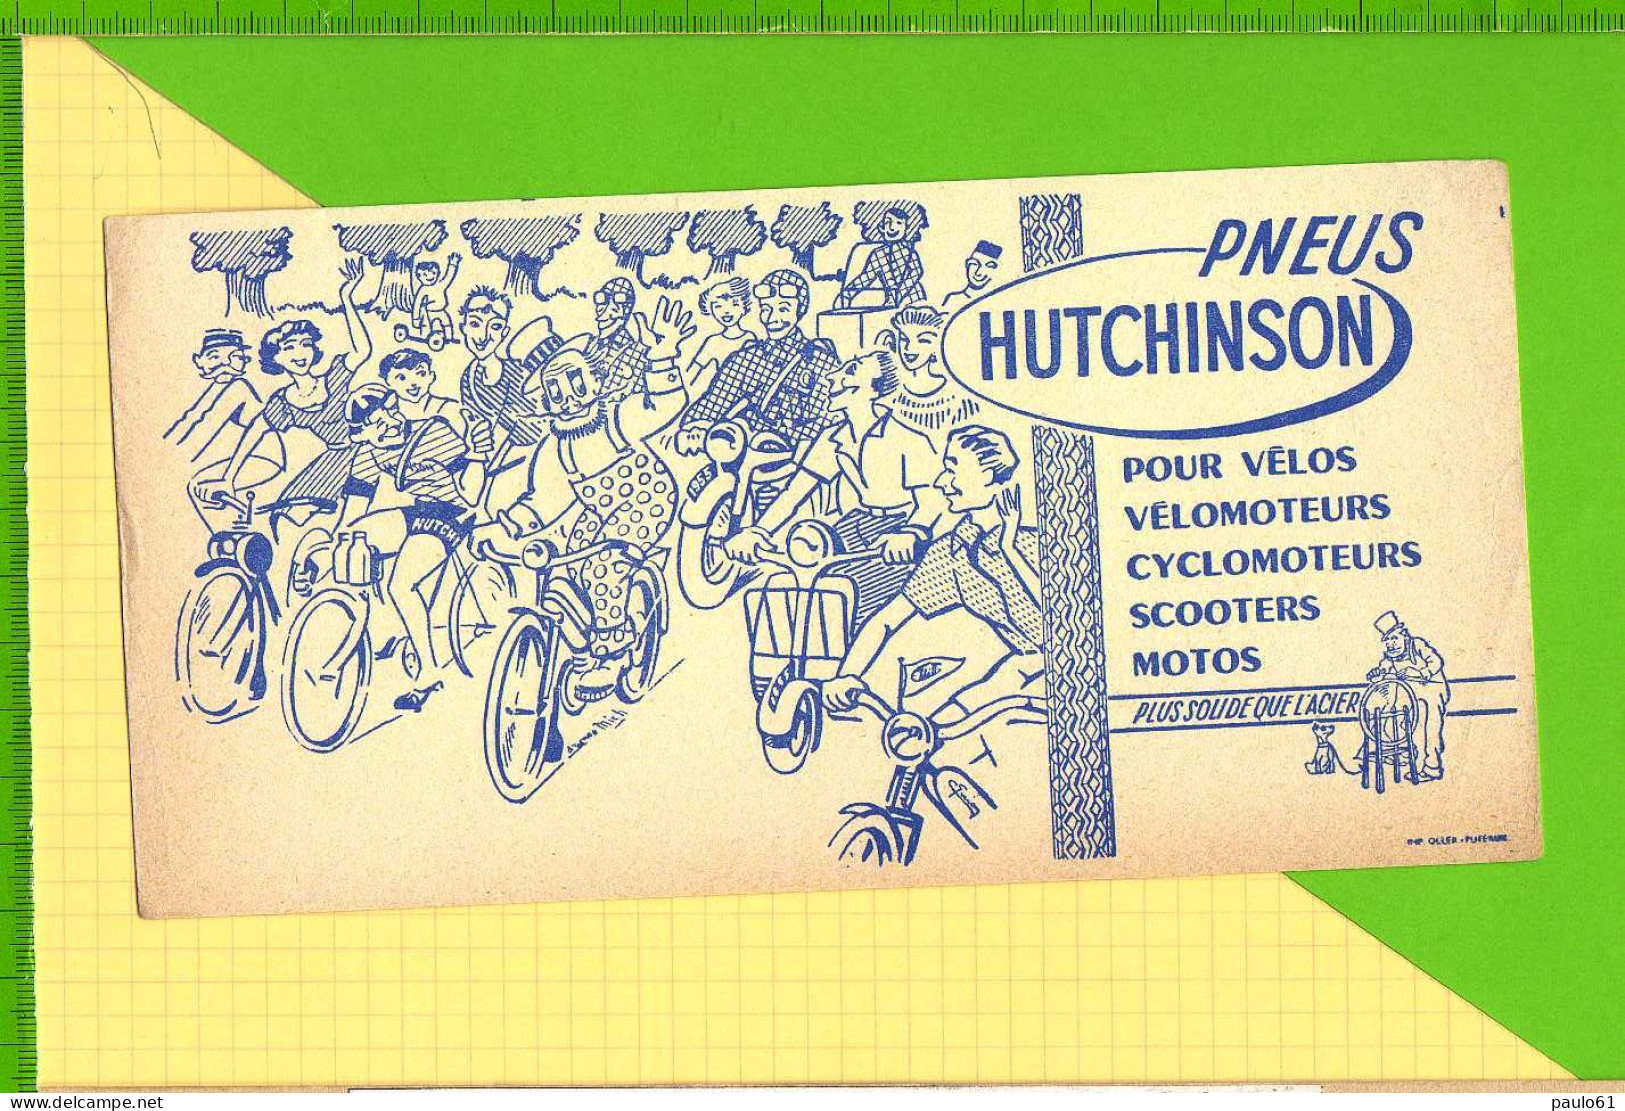 BUVARD & Blotting Paper :  Pneus HUTCHINSON  Velo Velomoteur Scooter Signé Mich Plus Solide Que L'Acier - Moto & Bicicletta